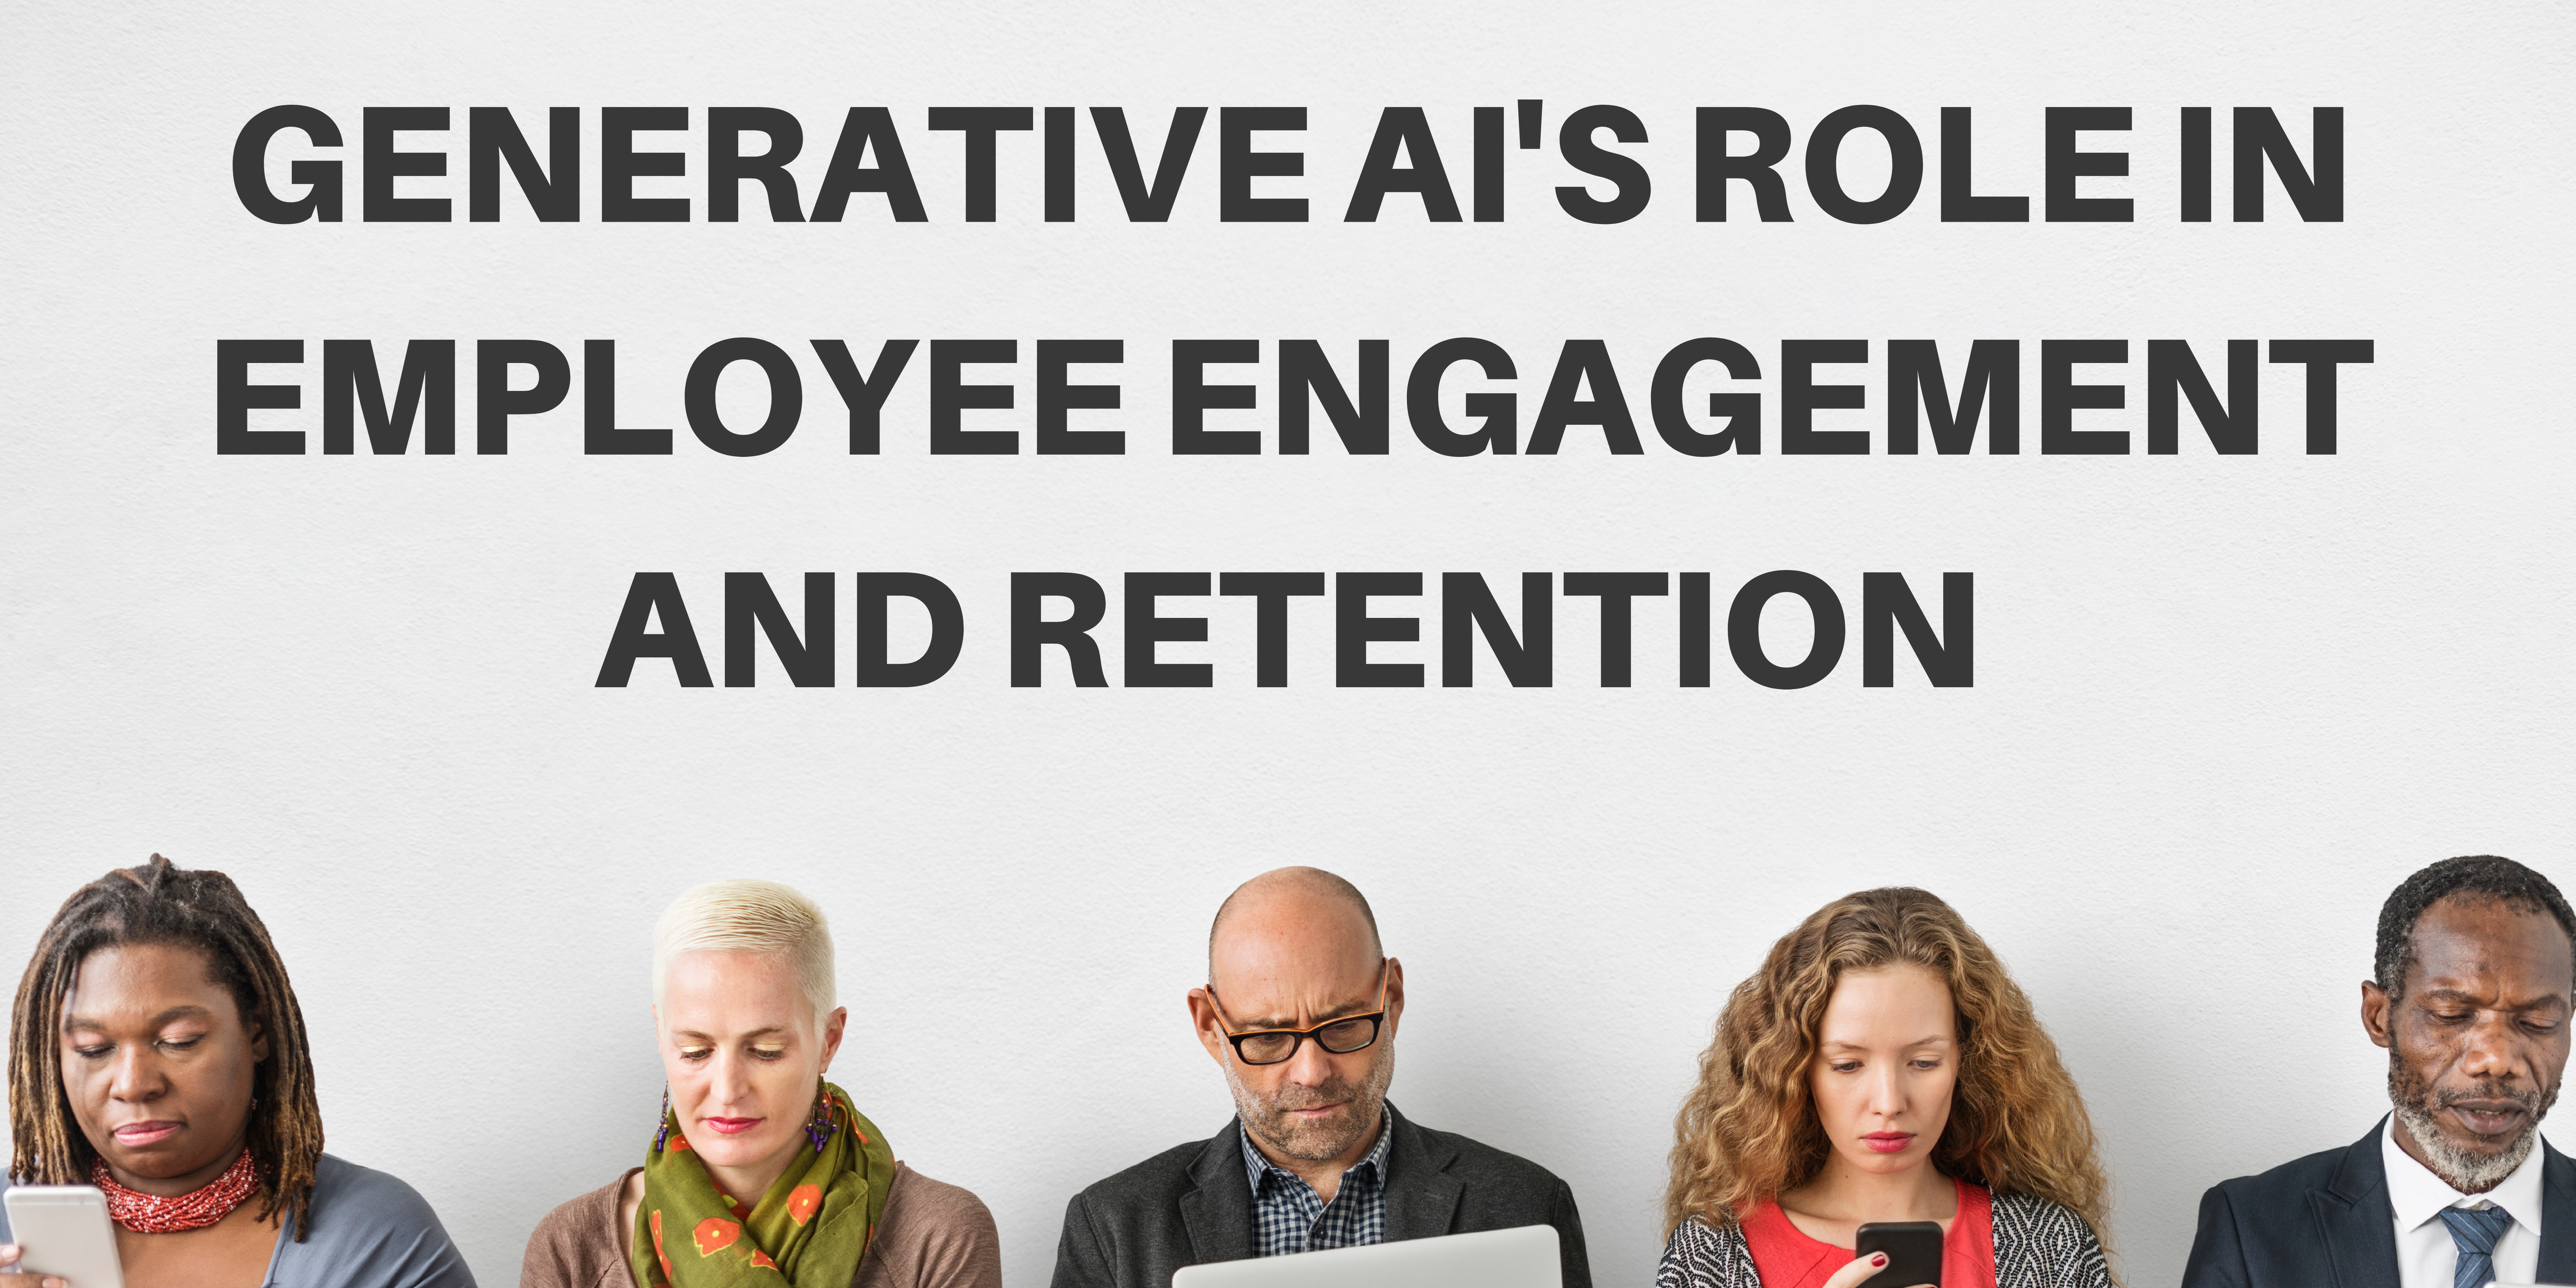 O papel da IA generativa no envolvimento e retenção dos colaboradores